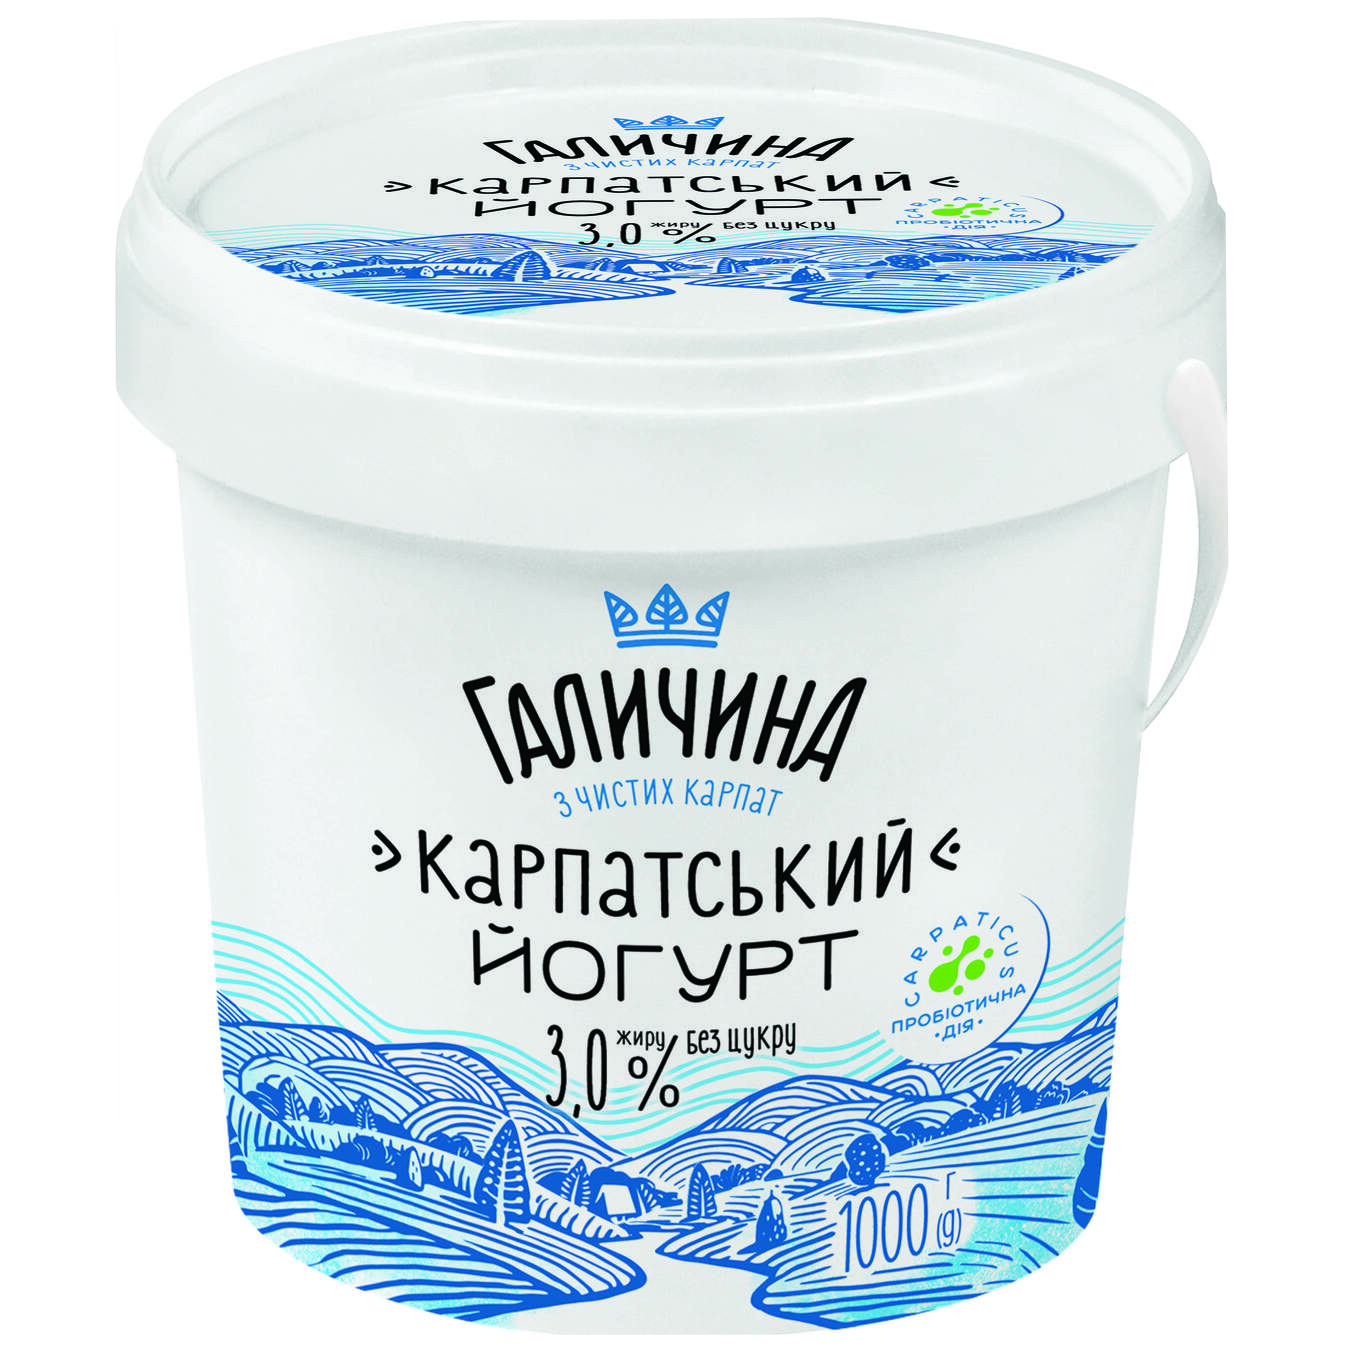 Galychyna Carpathian Sugar-Free Yogurt 3% 1kg